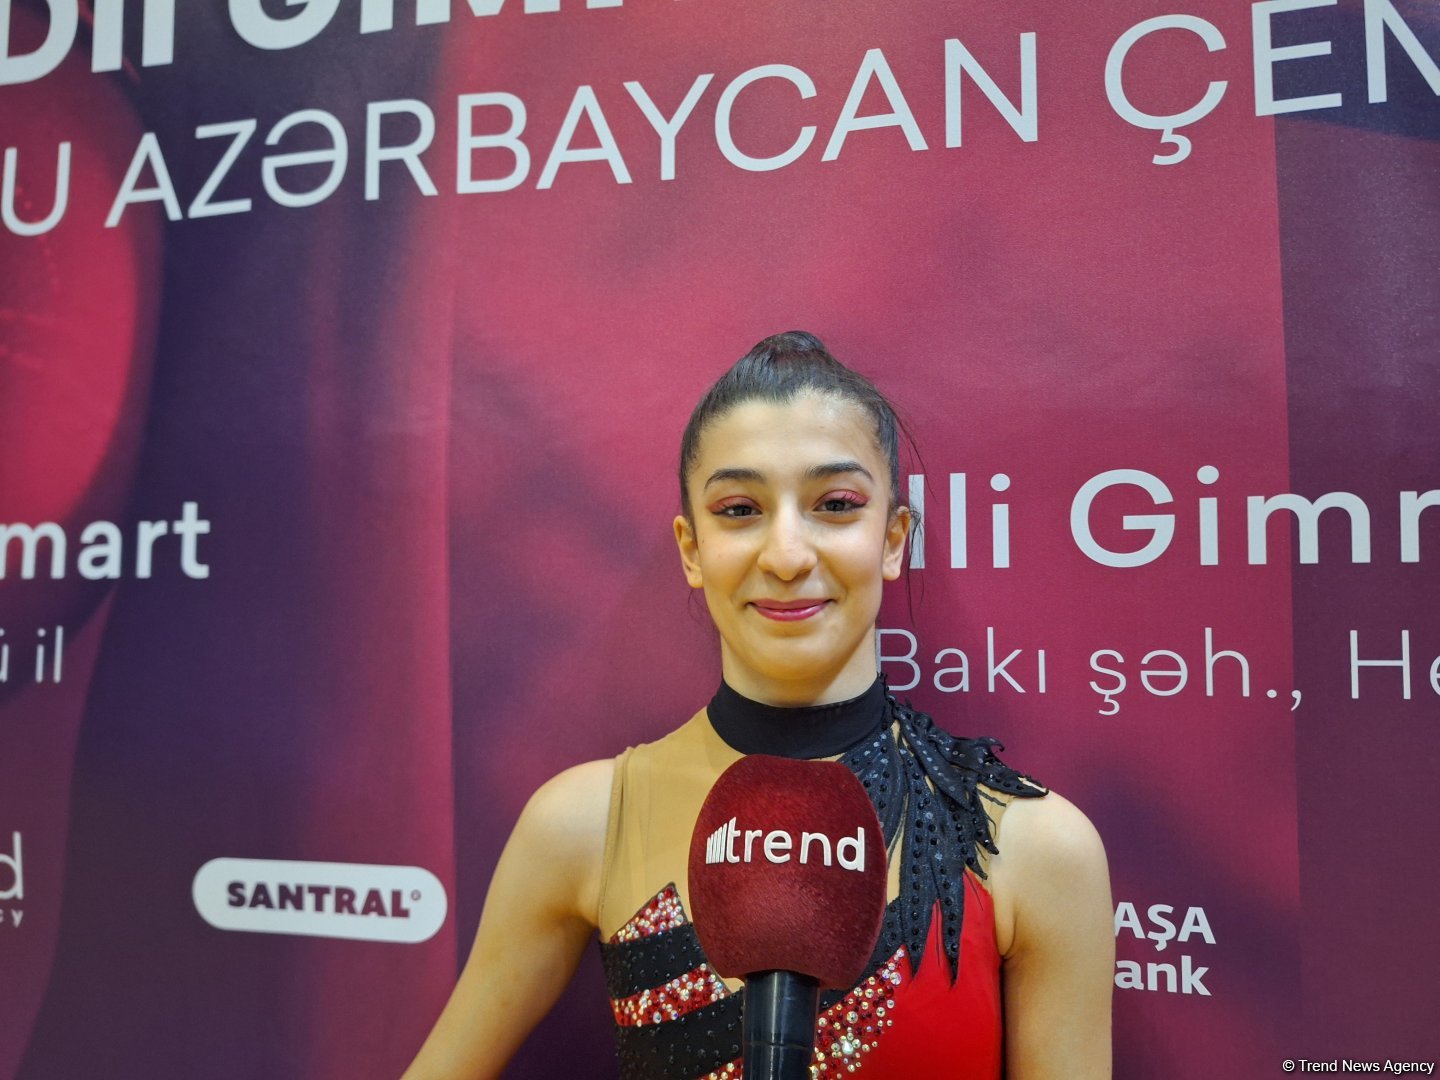 Опыт участия в чемпионате Азербайджана придаст уверенности на следующих соревнованиях – юная гимнастка